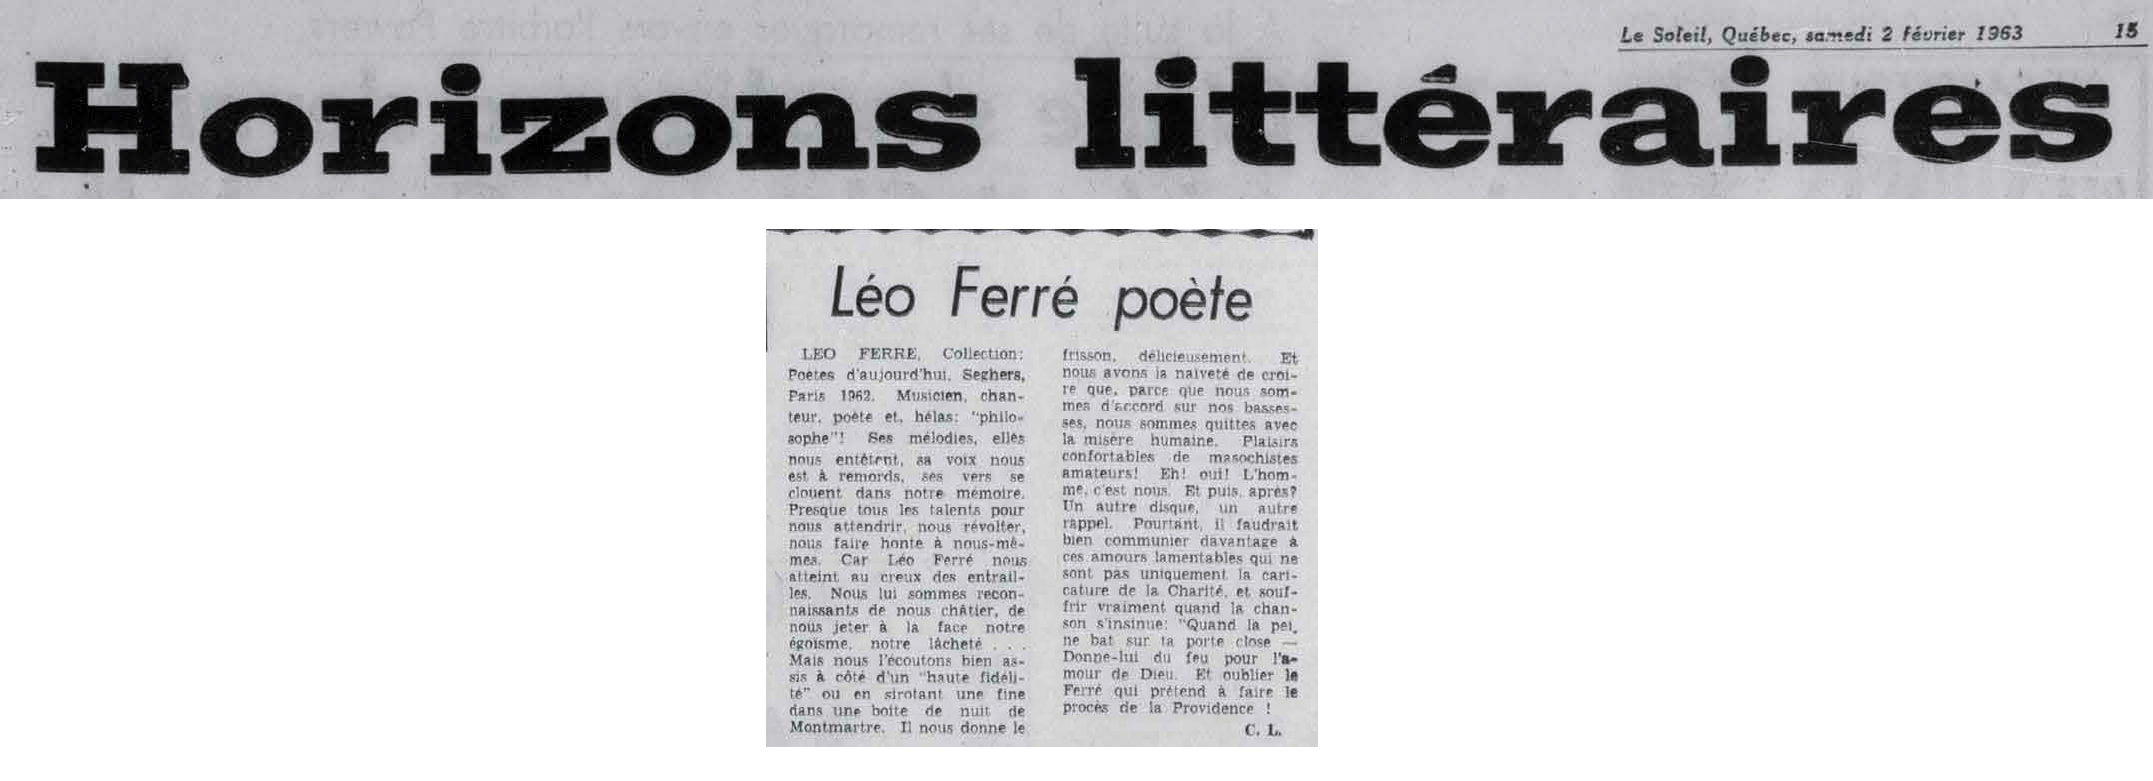 Léo Ferré - Le soleil, 1896- (Québec), samedi 2 février 1963